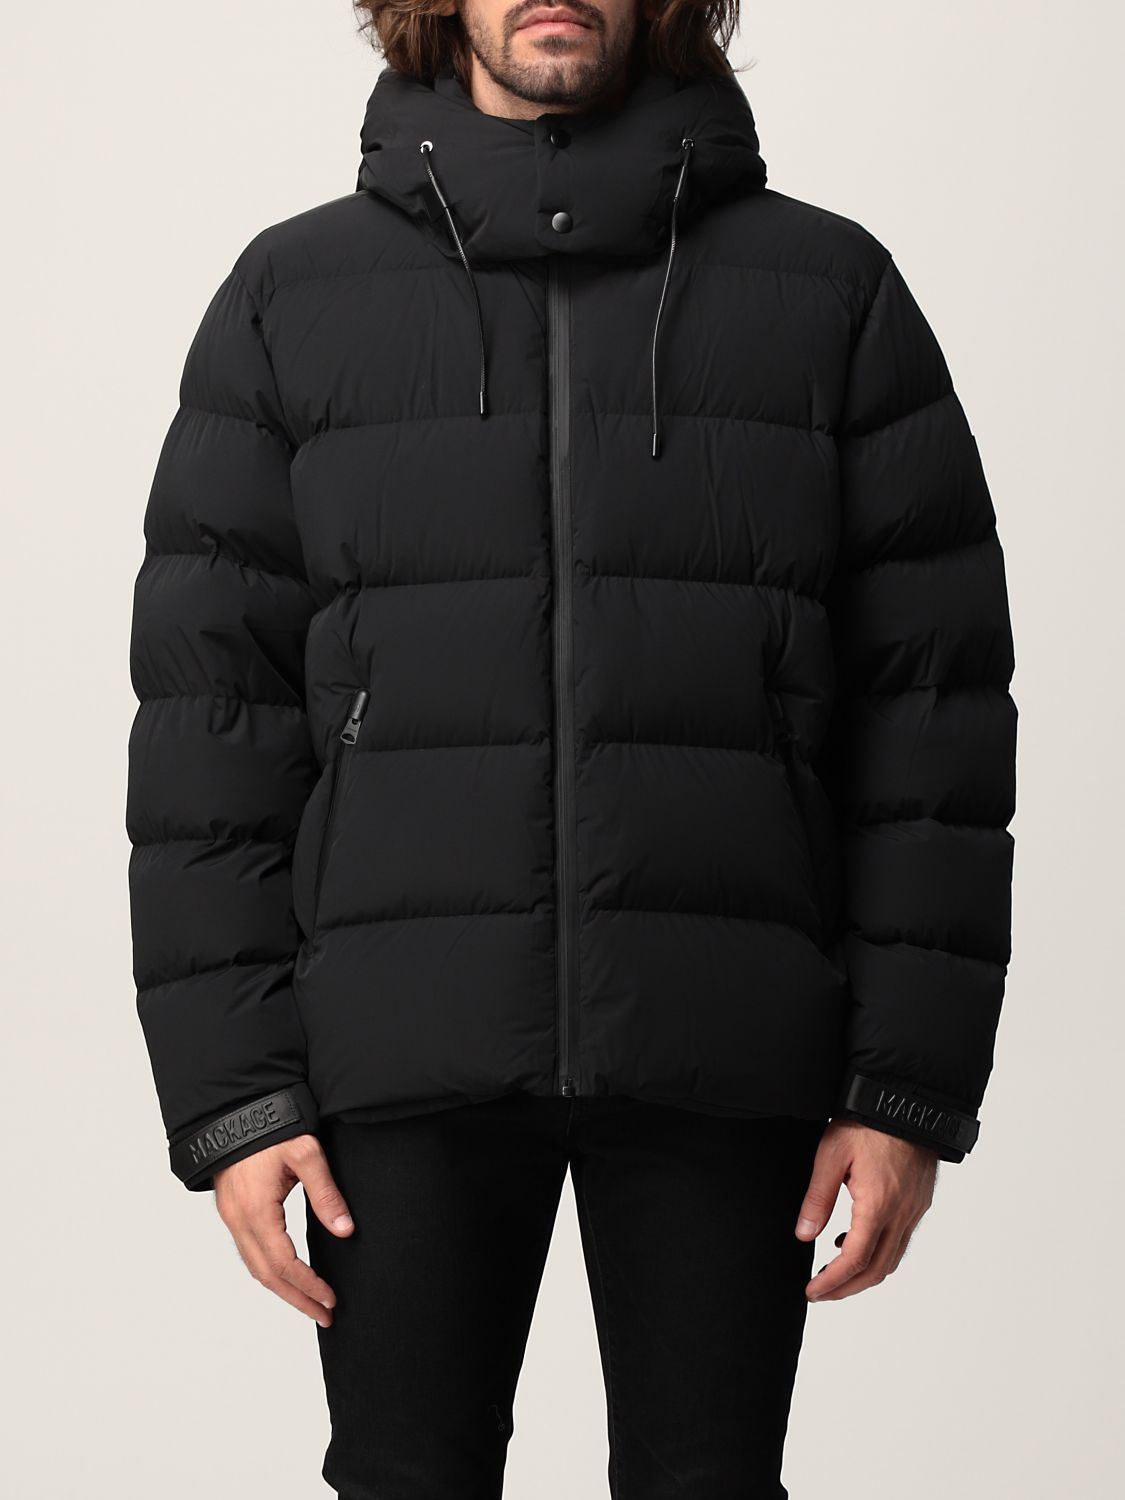 MACKAGE: jacket for man - Black | Mackage jacket SAMUEL online at ...